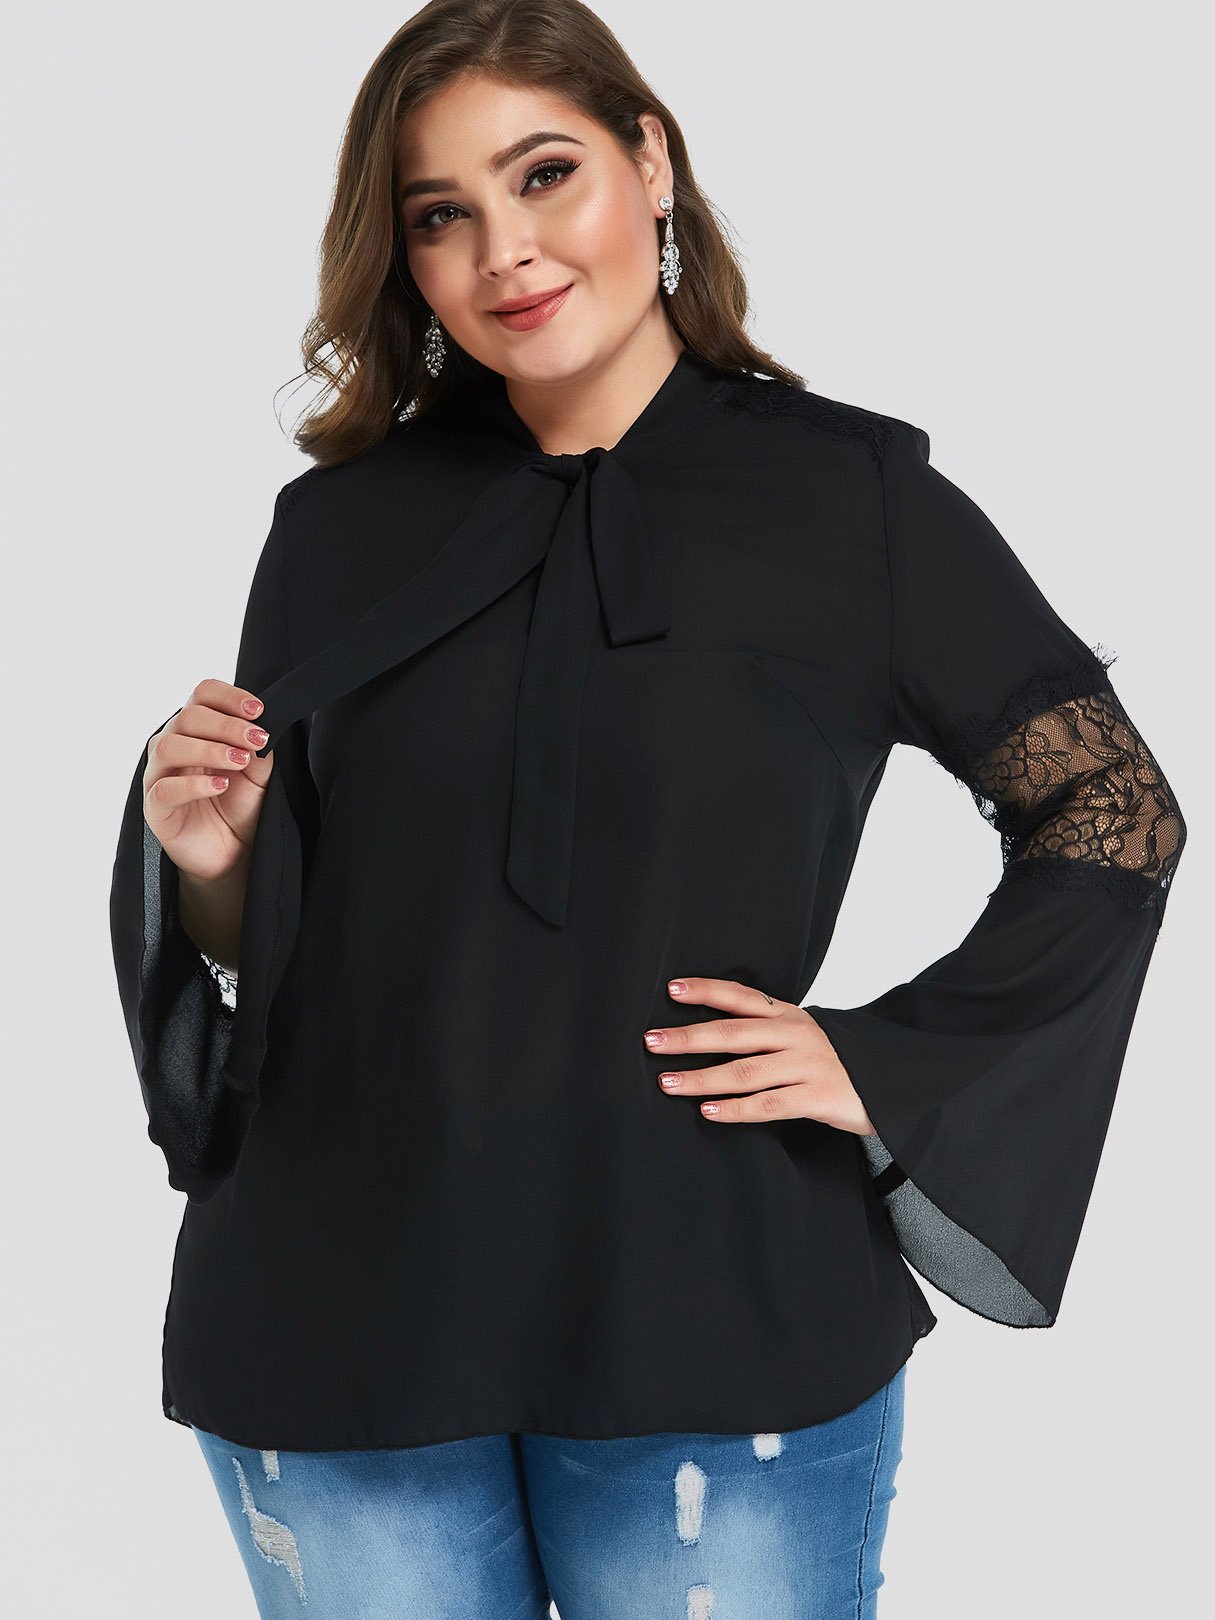 Wholesale Lace Long Sleeve Black Plus Size Tops